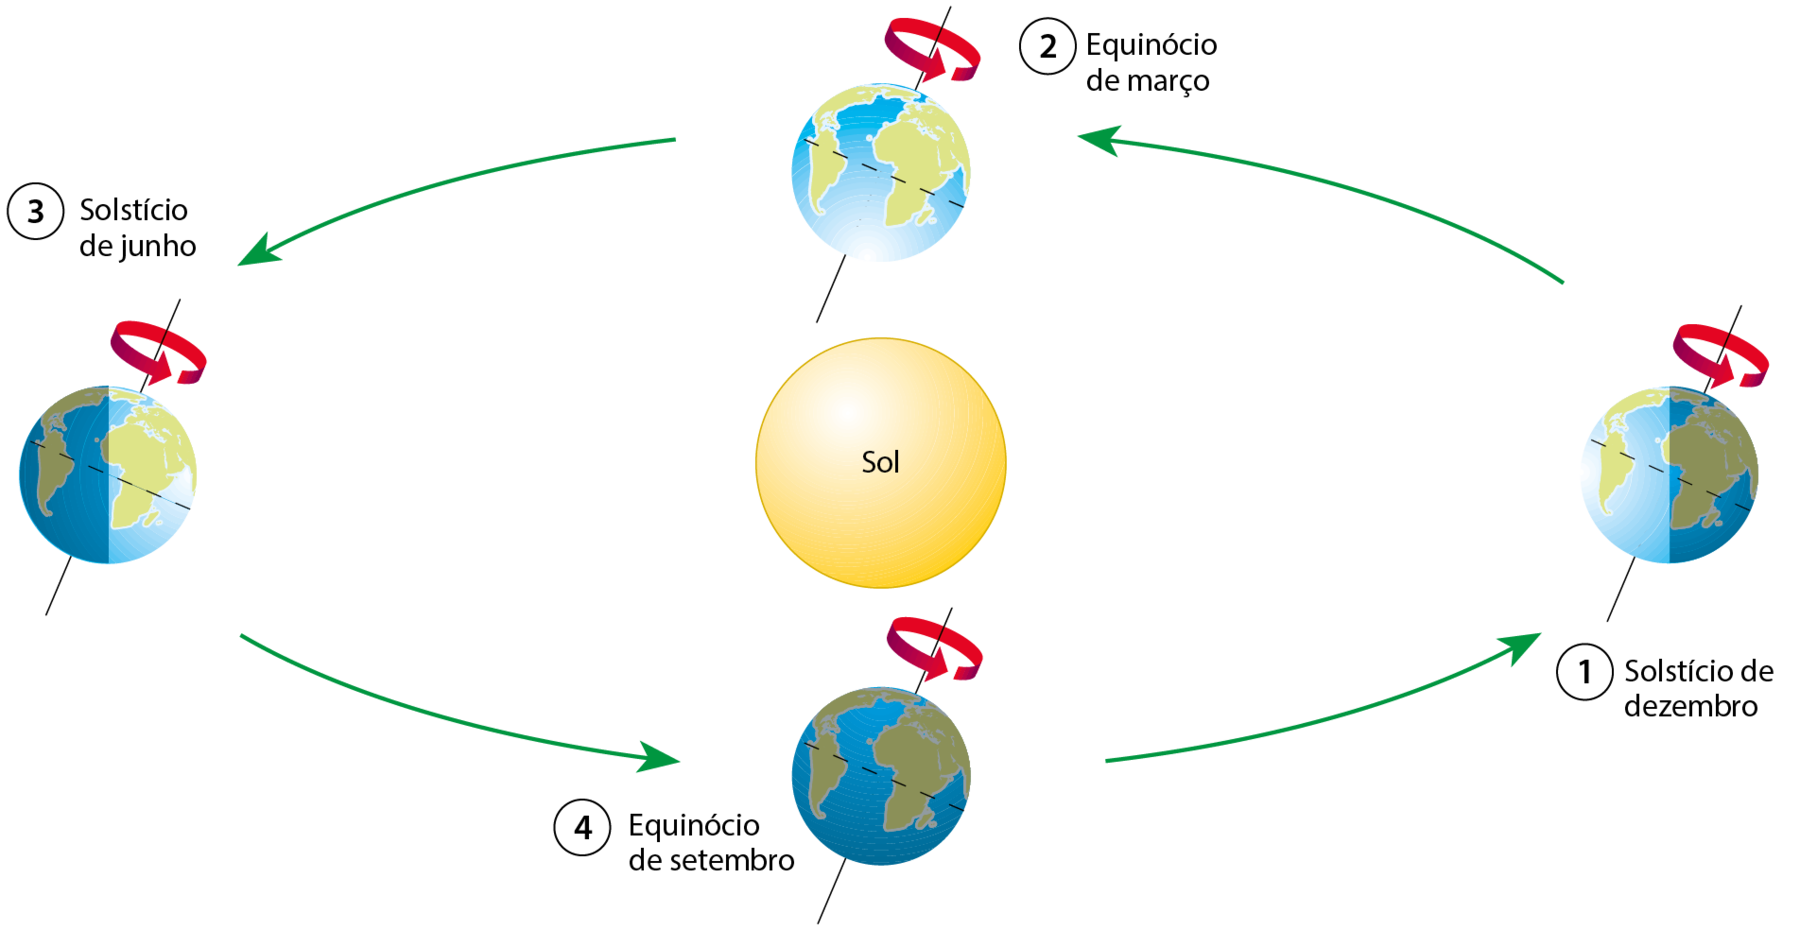 Esquema. No centro, ilustração do Sol. Ao redor, imagem do planeta Terra em quatro posições diferentes. Entre elas, setas verdes em sentido anti-horário. Em cada imagem do planeta tem um eixo passando pelo centro, levemente inclinado para a direita, com uma seta vermelha ao redor. 1: solstício de dezembro (o lado sombreado do planeta está à direita). 2: equinócio de março (apenas a parte iluminada do planeta está representada). 3: solstício de junho (o lado sombreado do planeta está à esquerda). 4: equinócio de setembro (apenas o lado sombreado do planeta é representado).